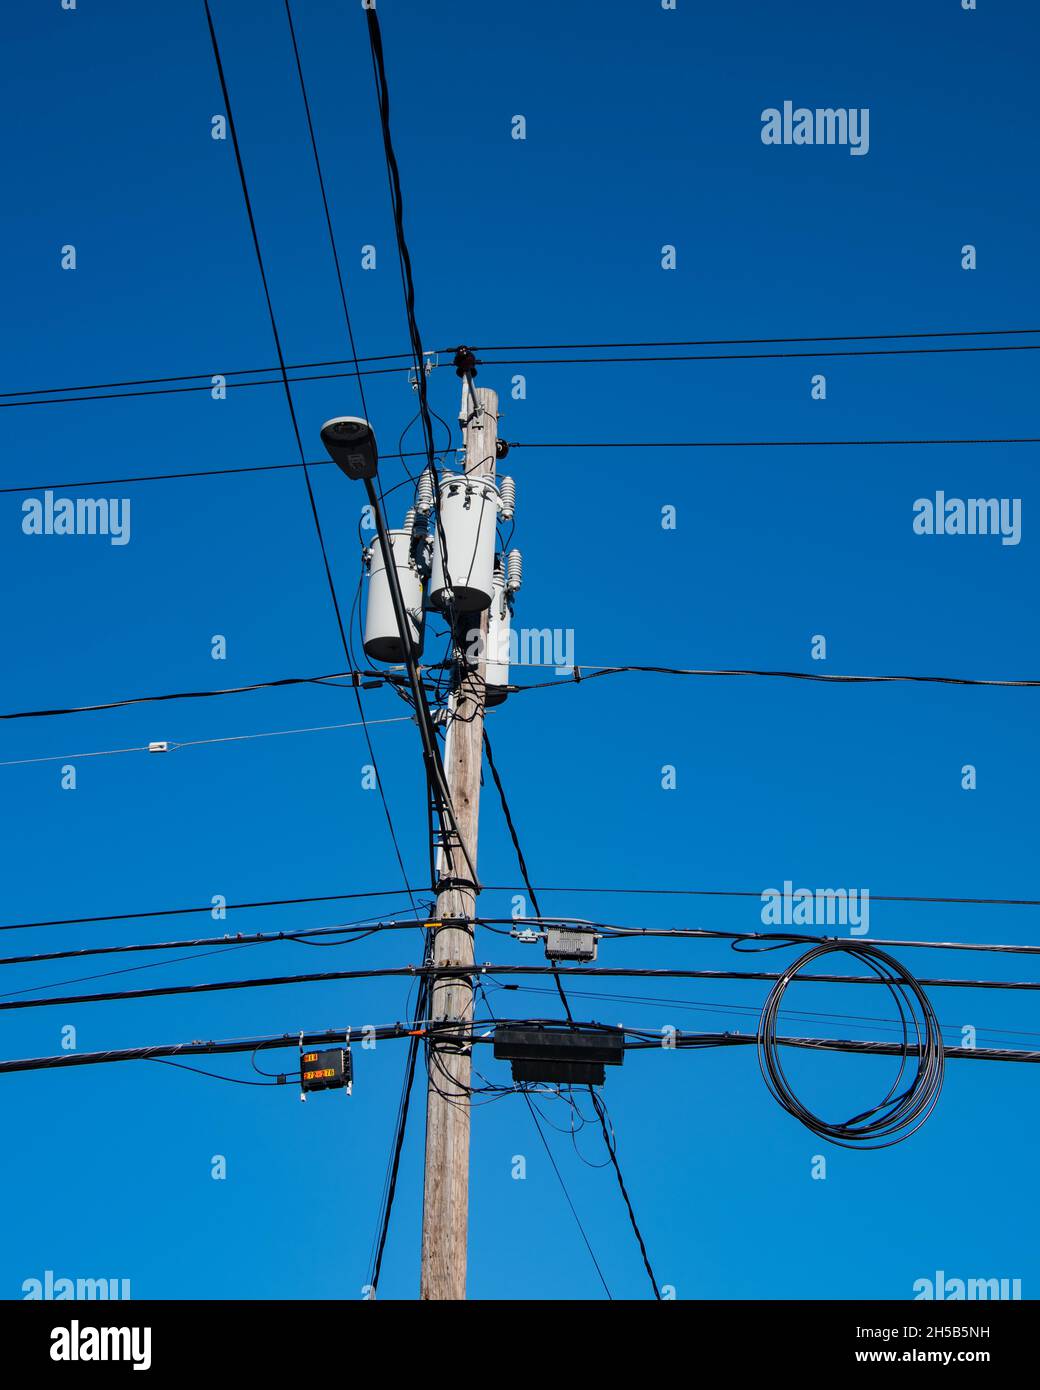 Ein Strommast mit Transformatoren, einer Straßenbeleuchtung, Verteilerkästen und Drähten und Kabeln mit einem tiefblauen Himmel Hintergrund. Stockfoto